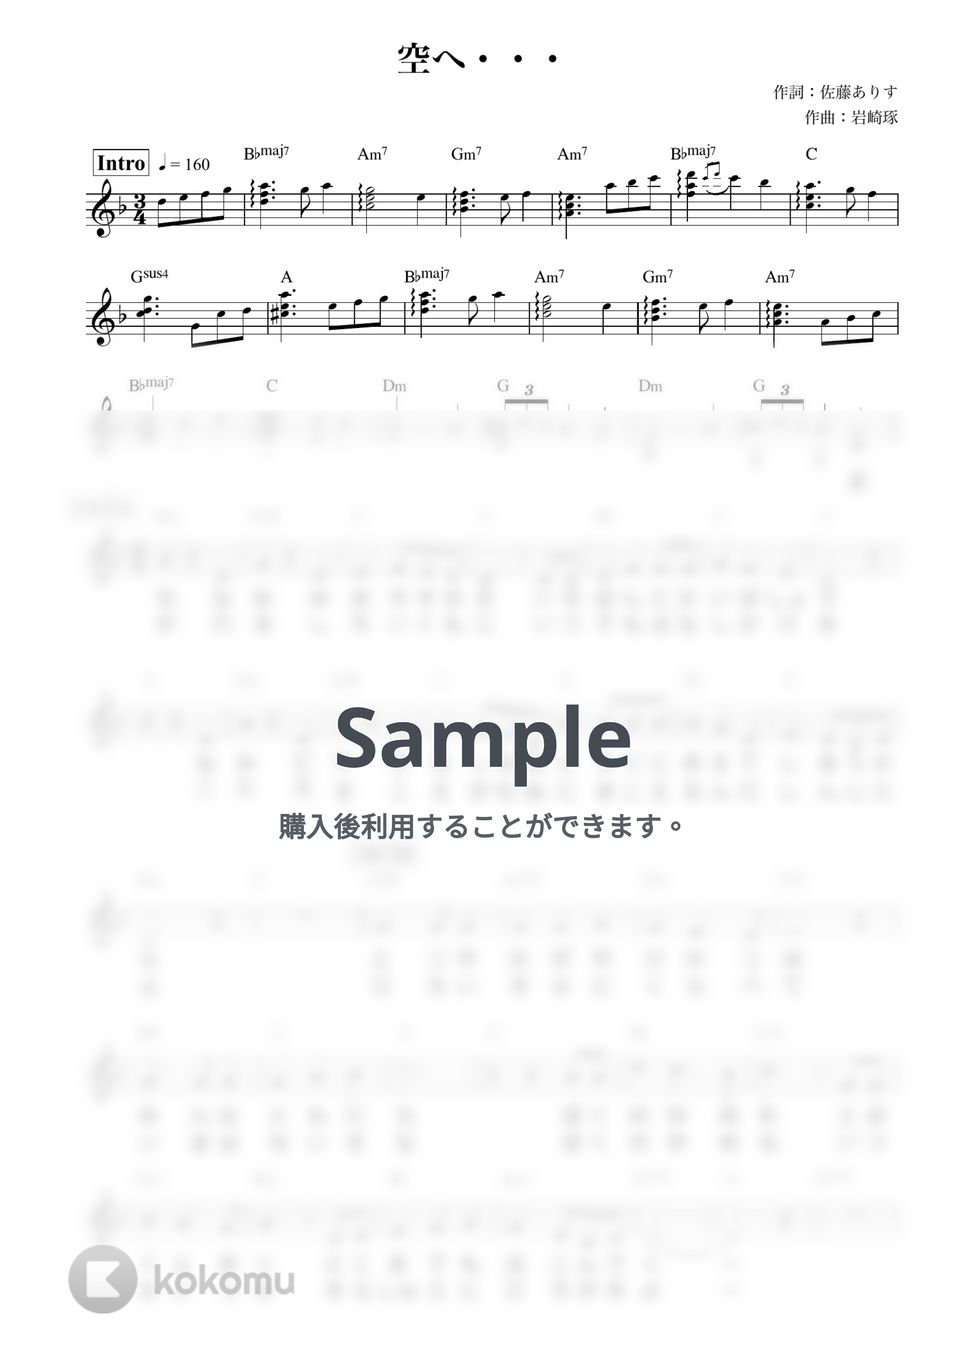 笠原弘子 - 空へ... (メロディ/『ロミオの青い空』) by 鈴木 歌穂【ピアノ弾き語り】